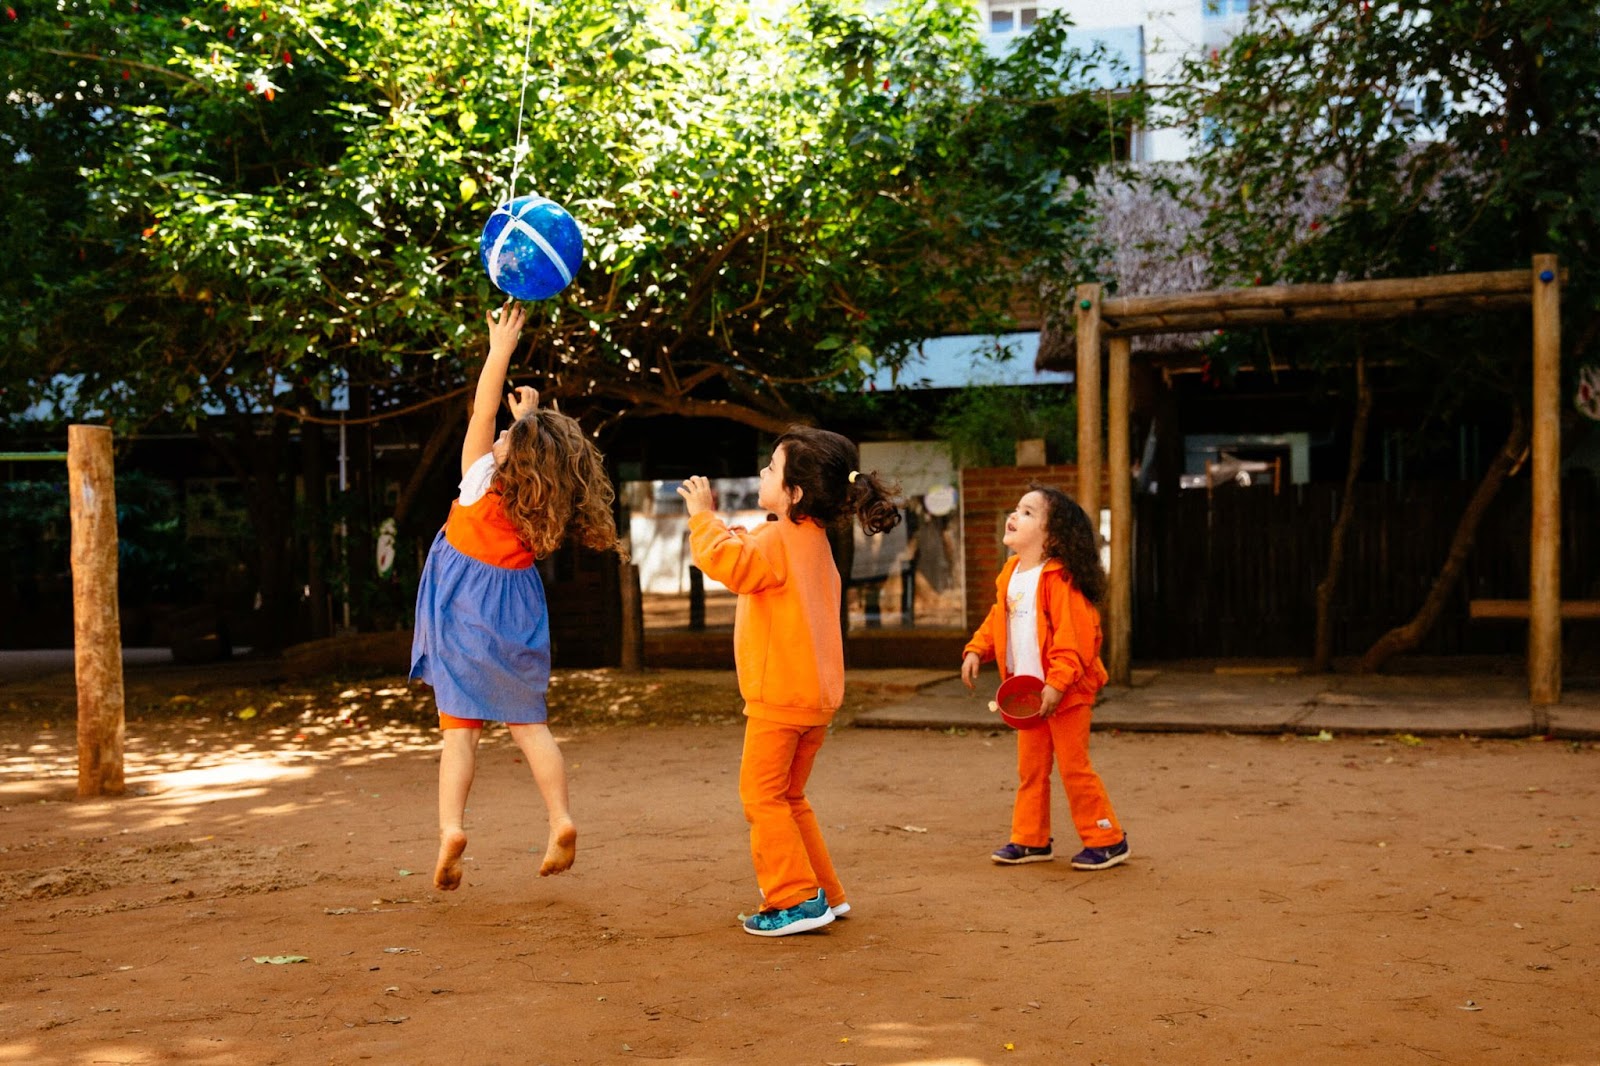 A imagem mostra três crianças jogando bola em um quintal arborizado.